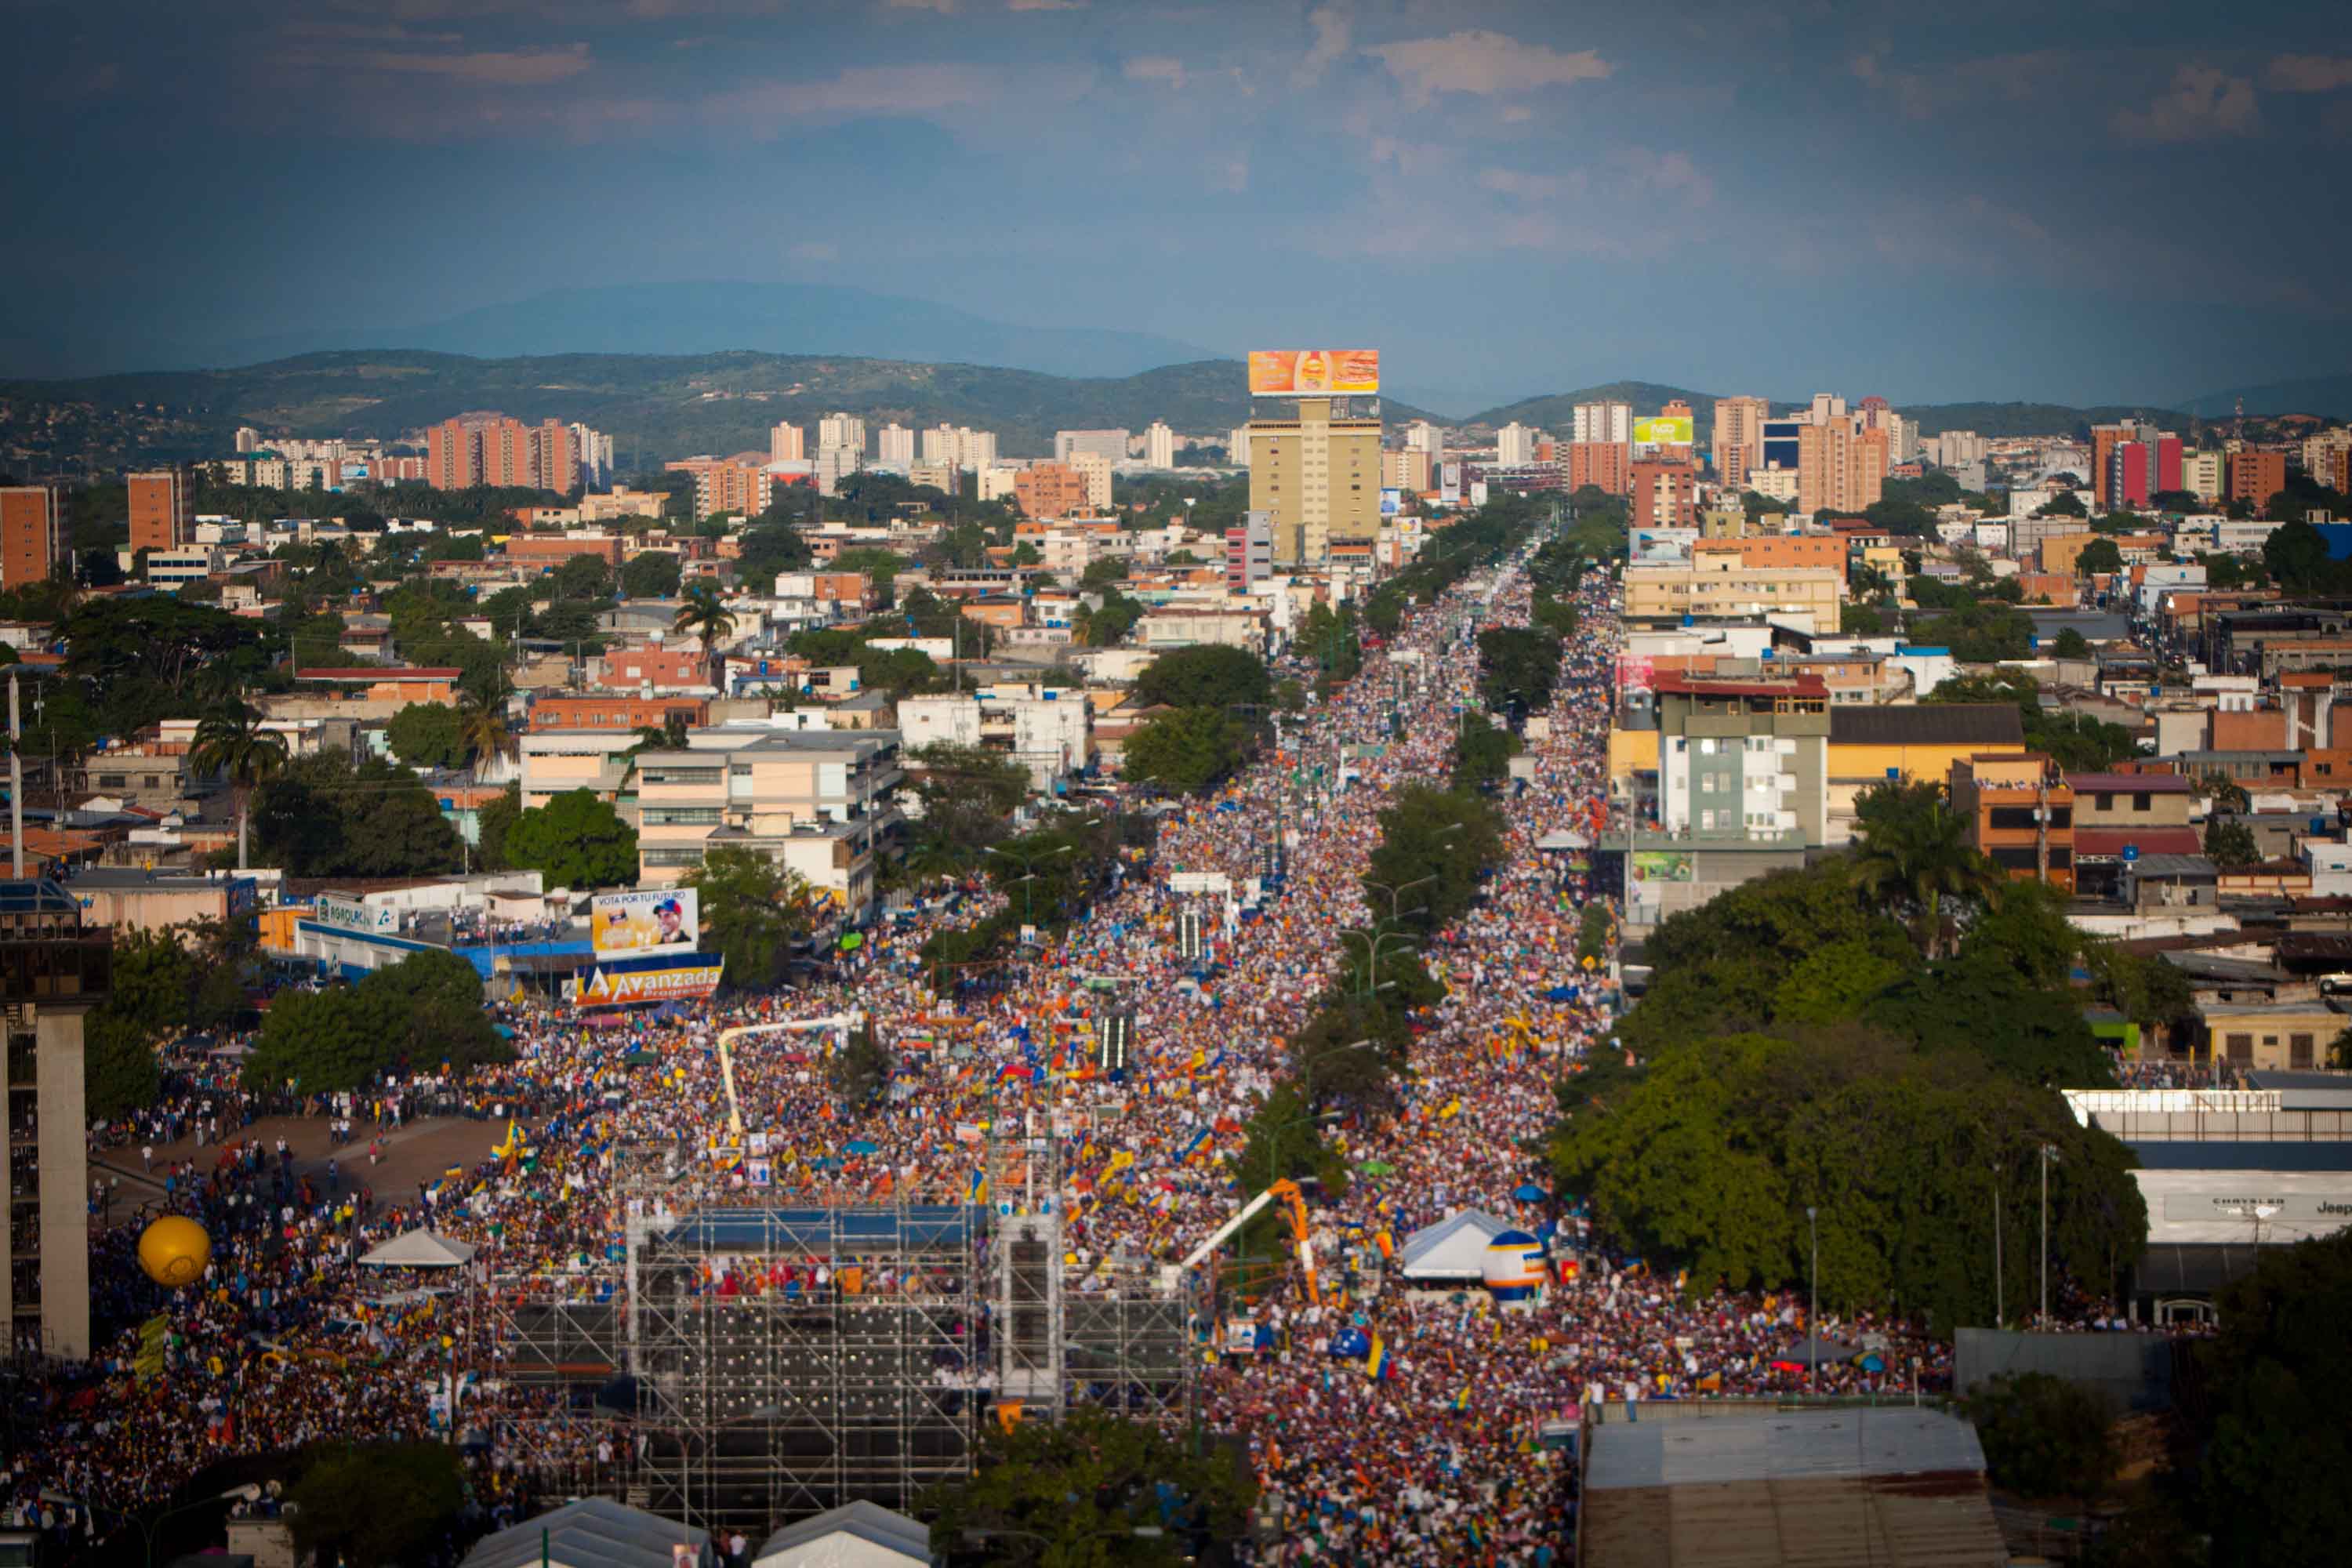 El cambio avanzó" porque por fin con Capriles la propuesta opositora no expresaba "nostalgia por el pasado", sino decisión y vocación de cambio